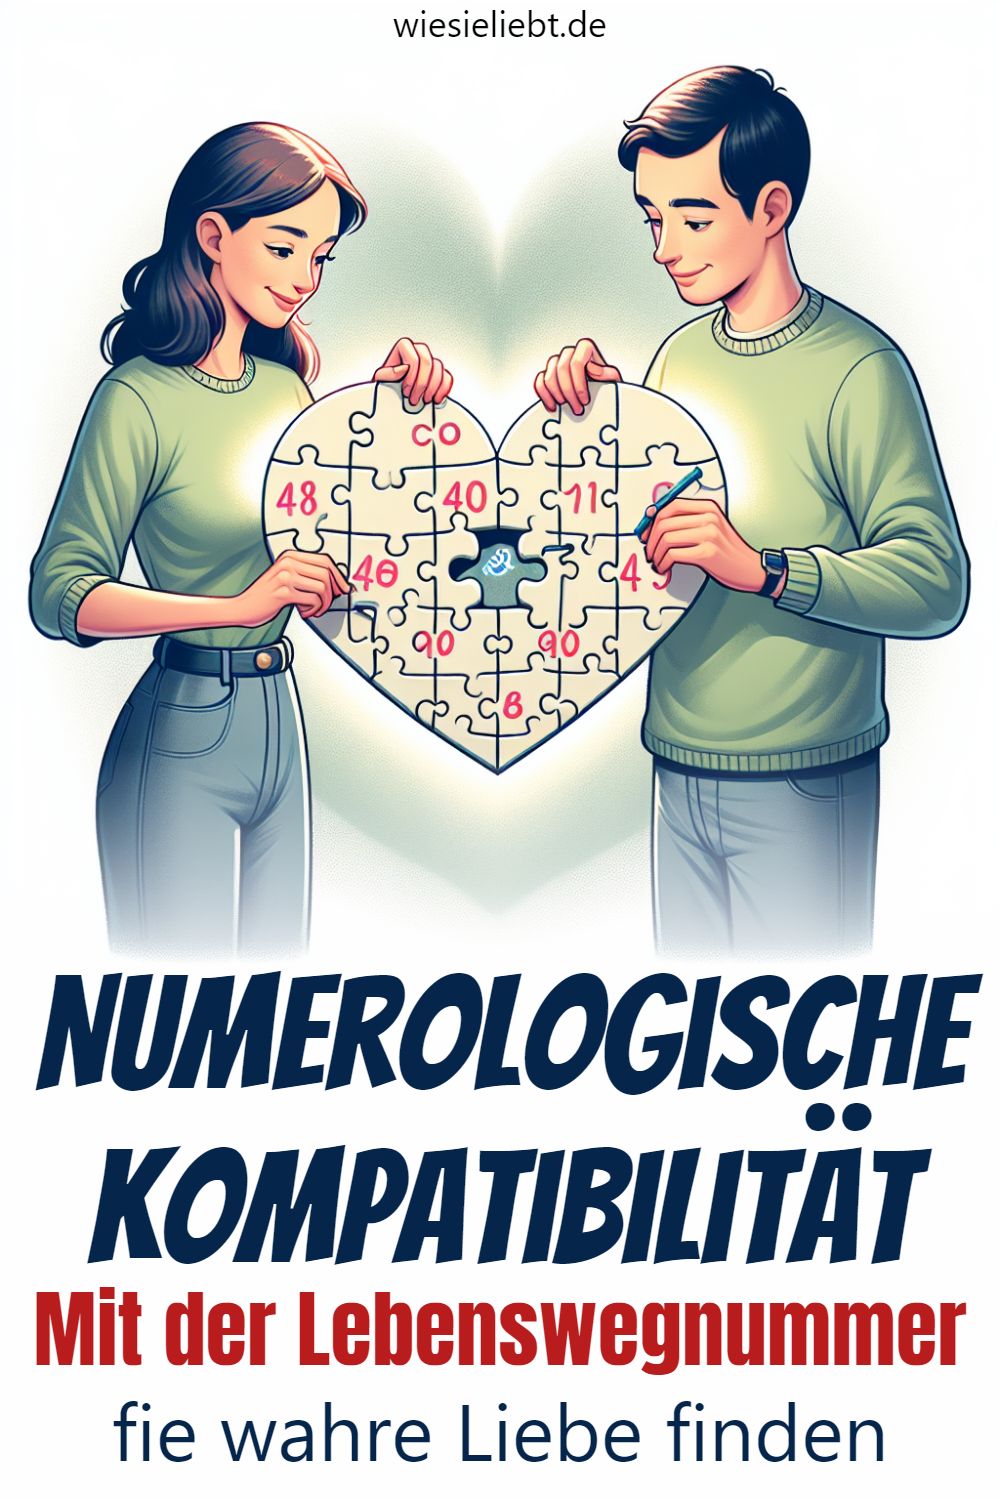 Numerologische Kompatibilität Mit der Lebenswegnummer fie wahre Liebe finden